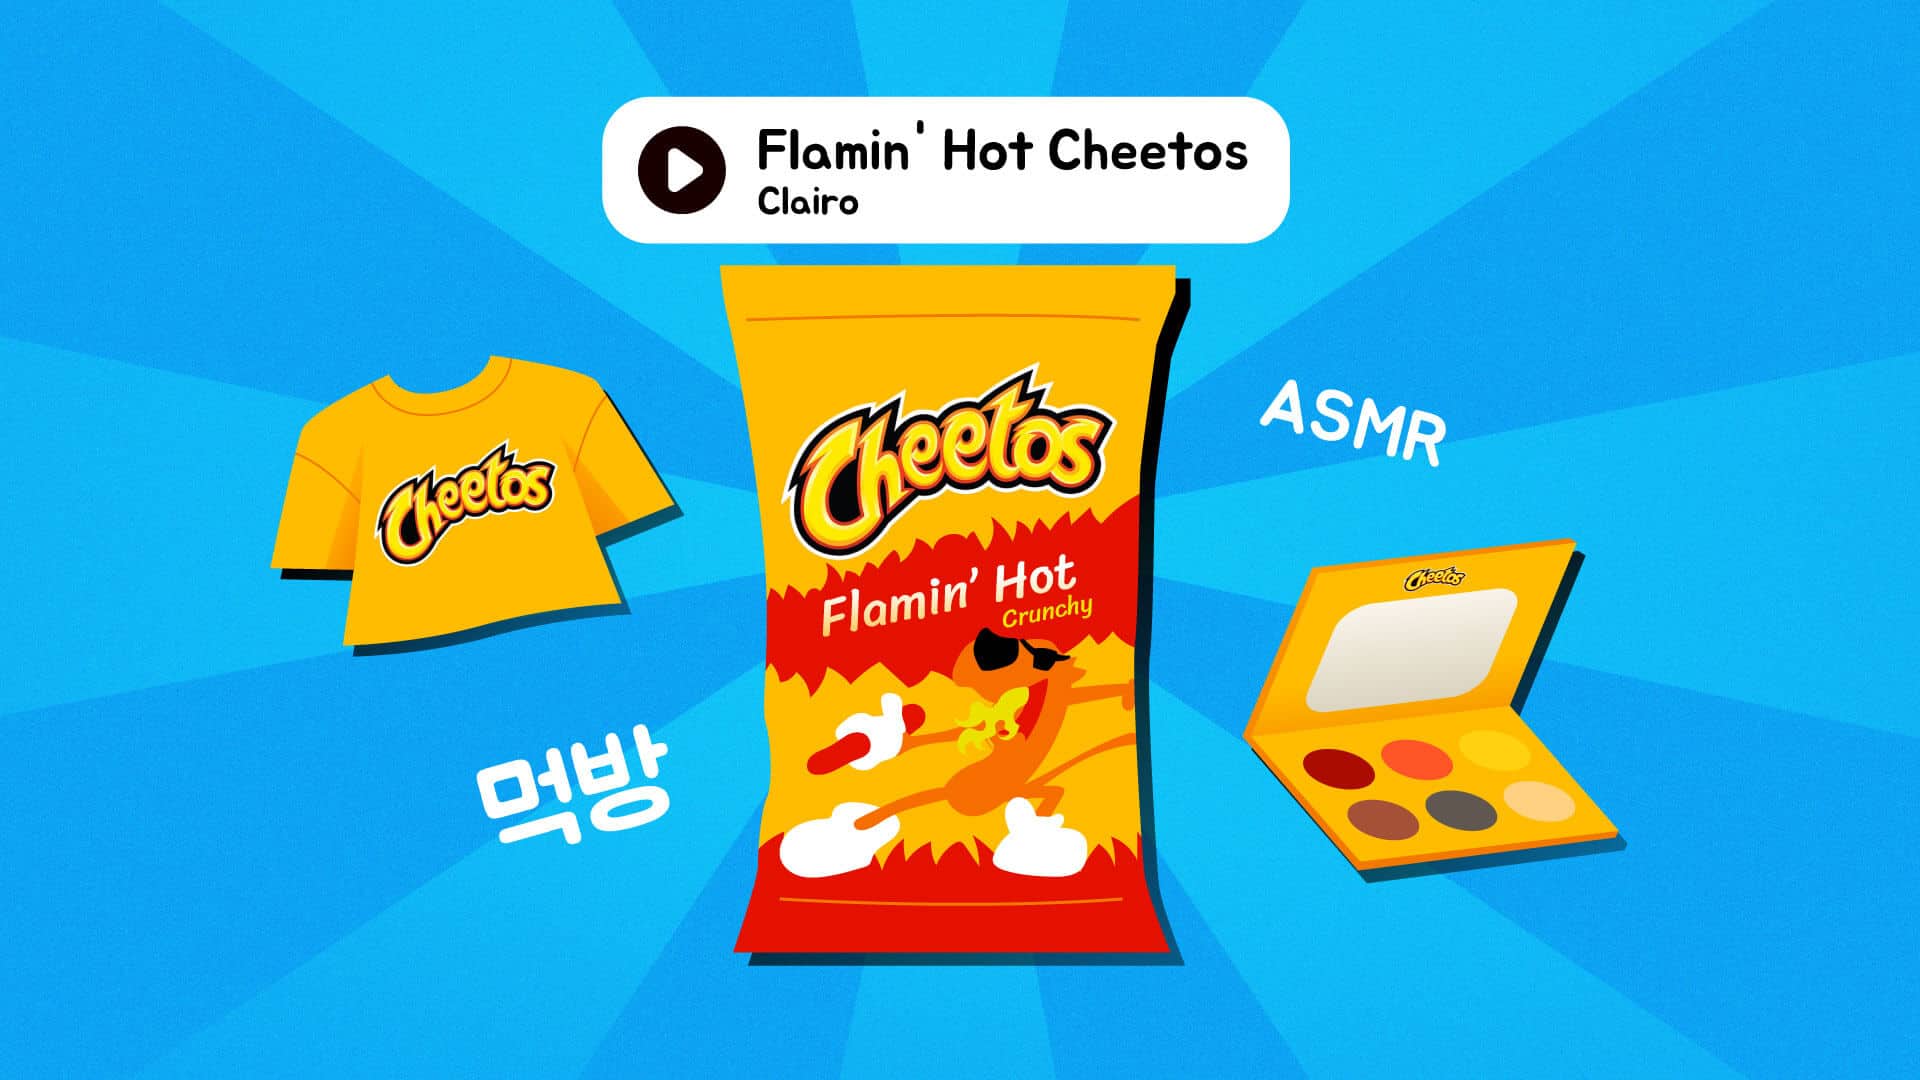 Flamin’ Hot Cheetos